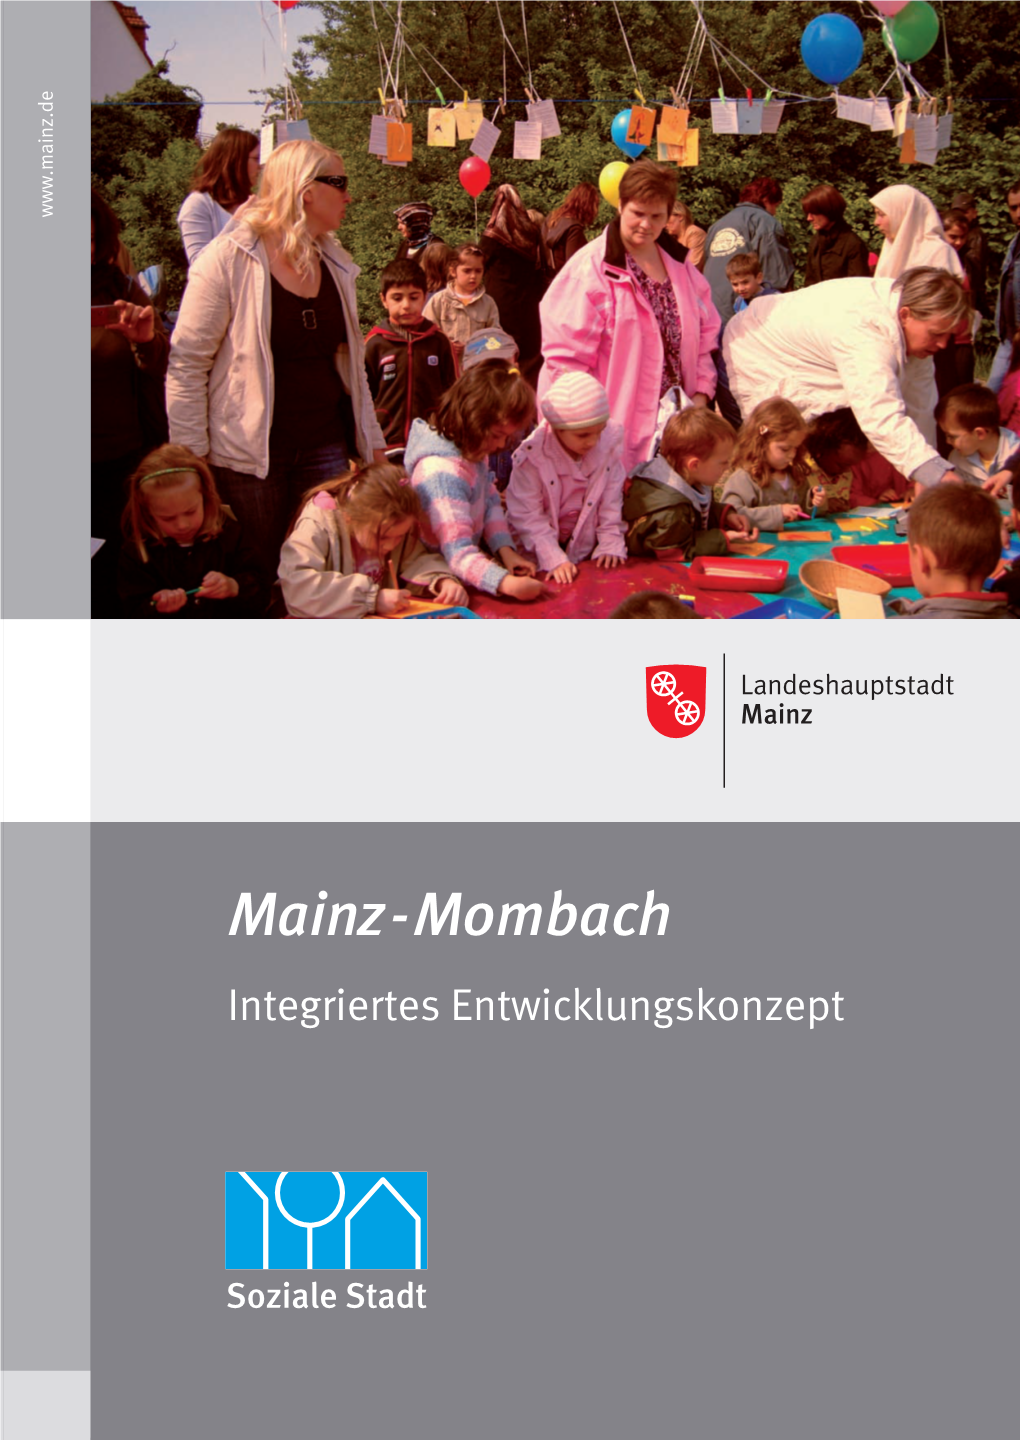 Mainz-Mombach Integriertes Entwicklungskonzept